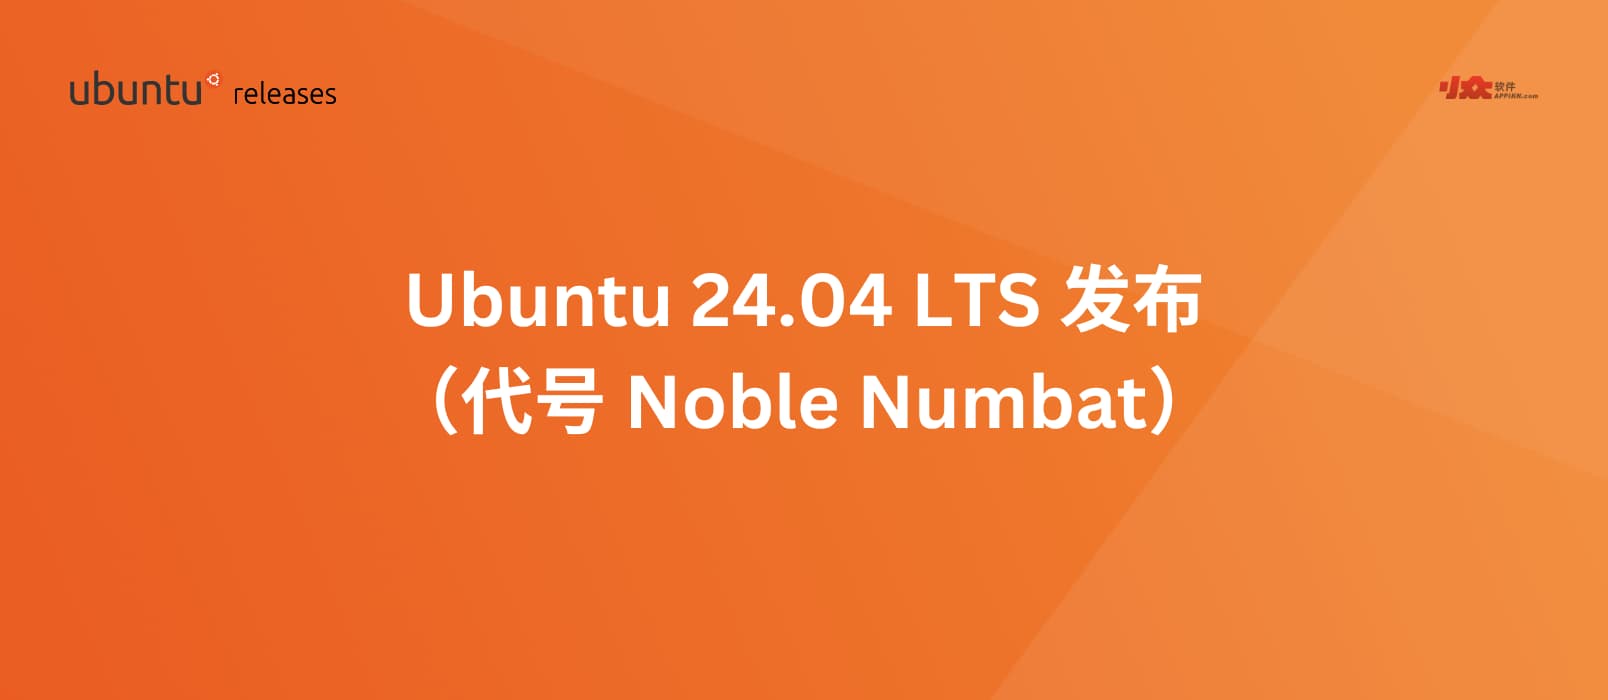 Ubuntu 24.04 LTS（代号“Noble Numbat”）已经发布